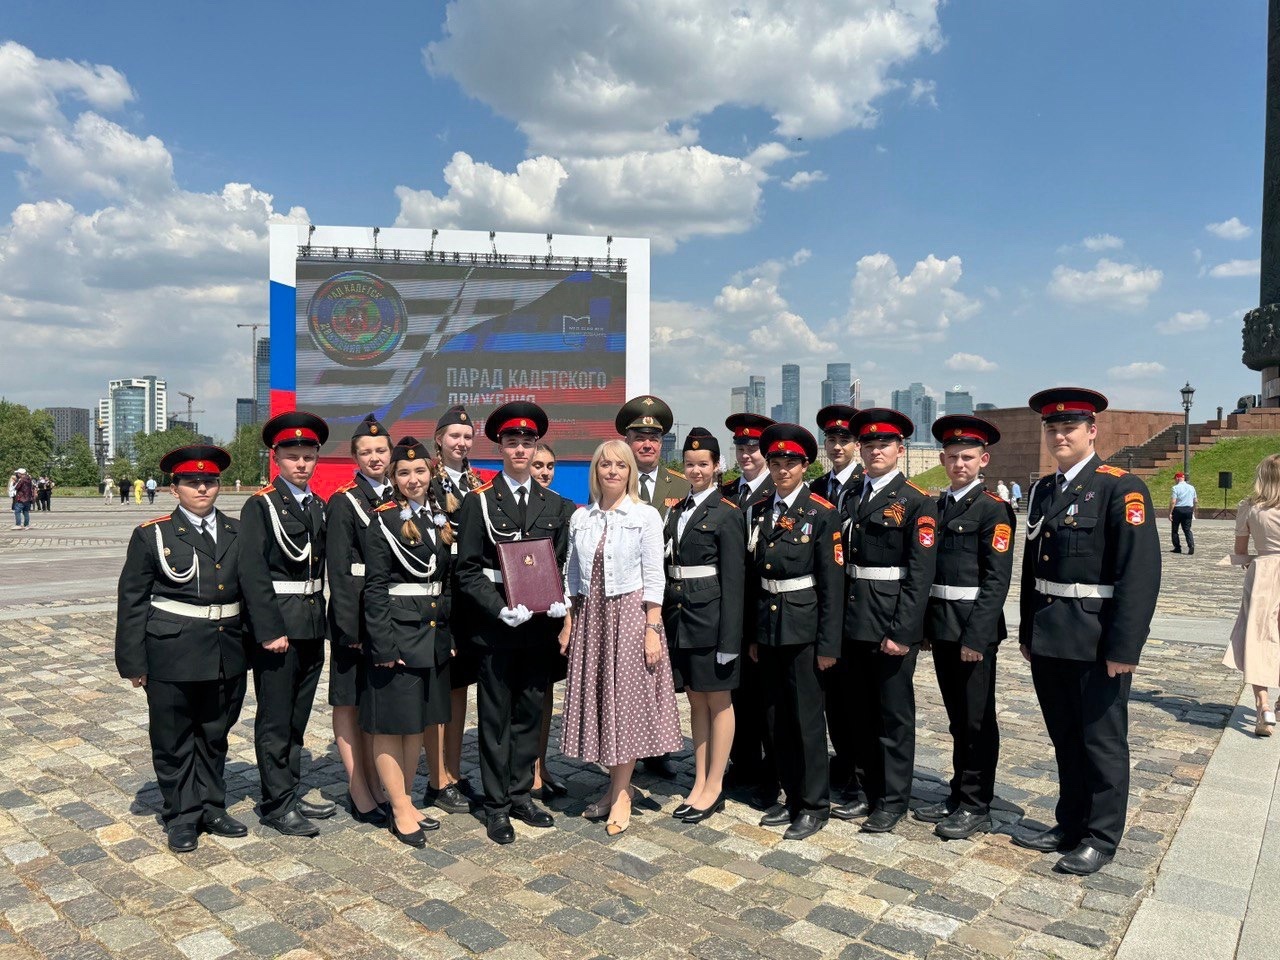 Благодарственное письмо за преданность традициям кадетского движения получили ученики школы №2083 от мэра Москвы